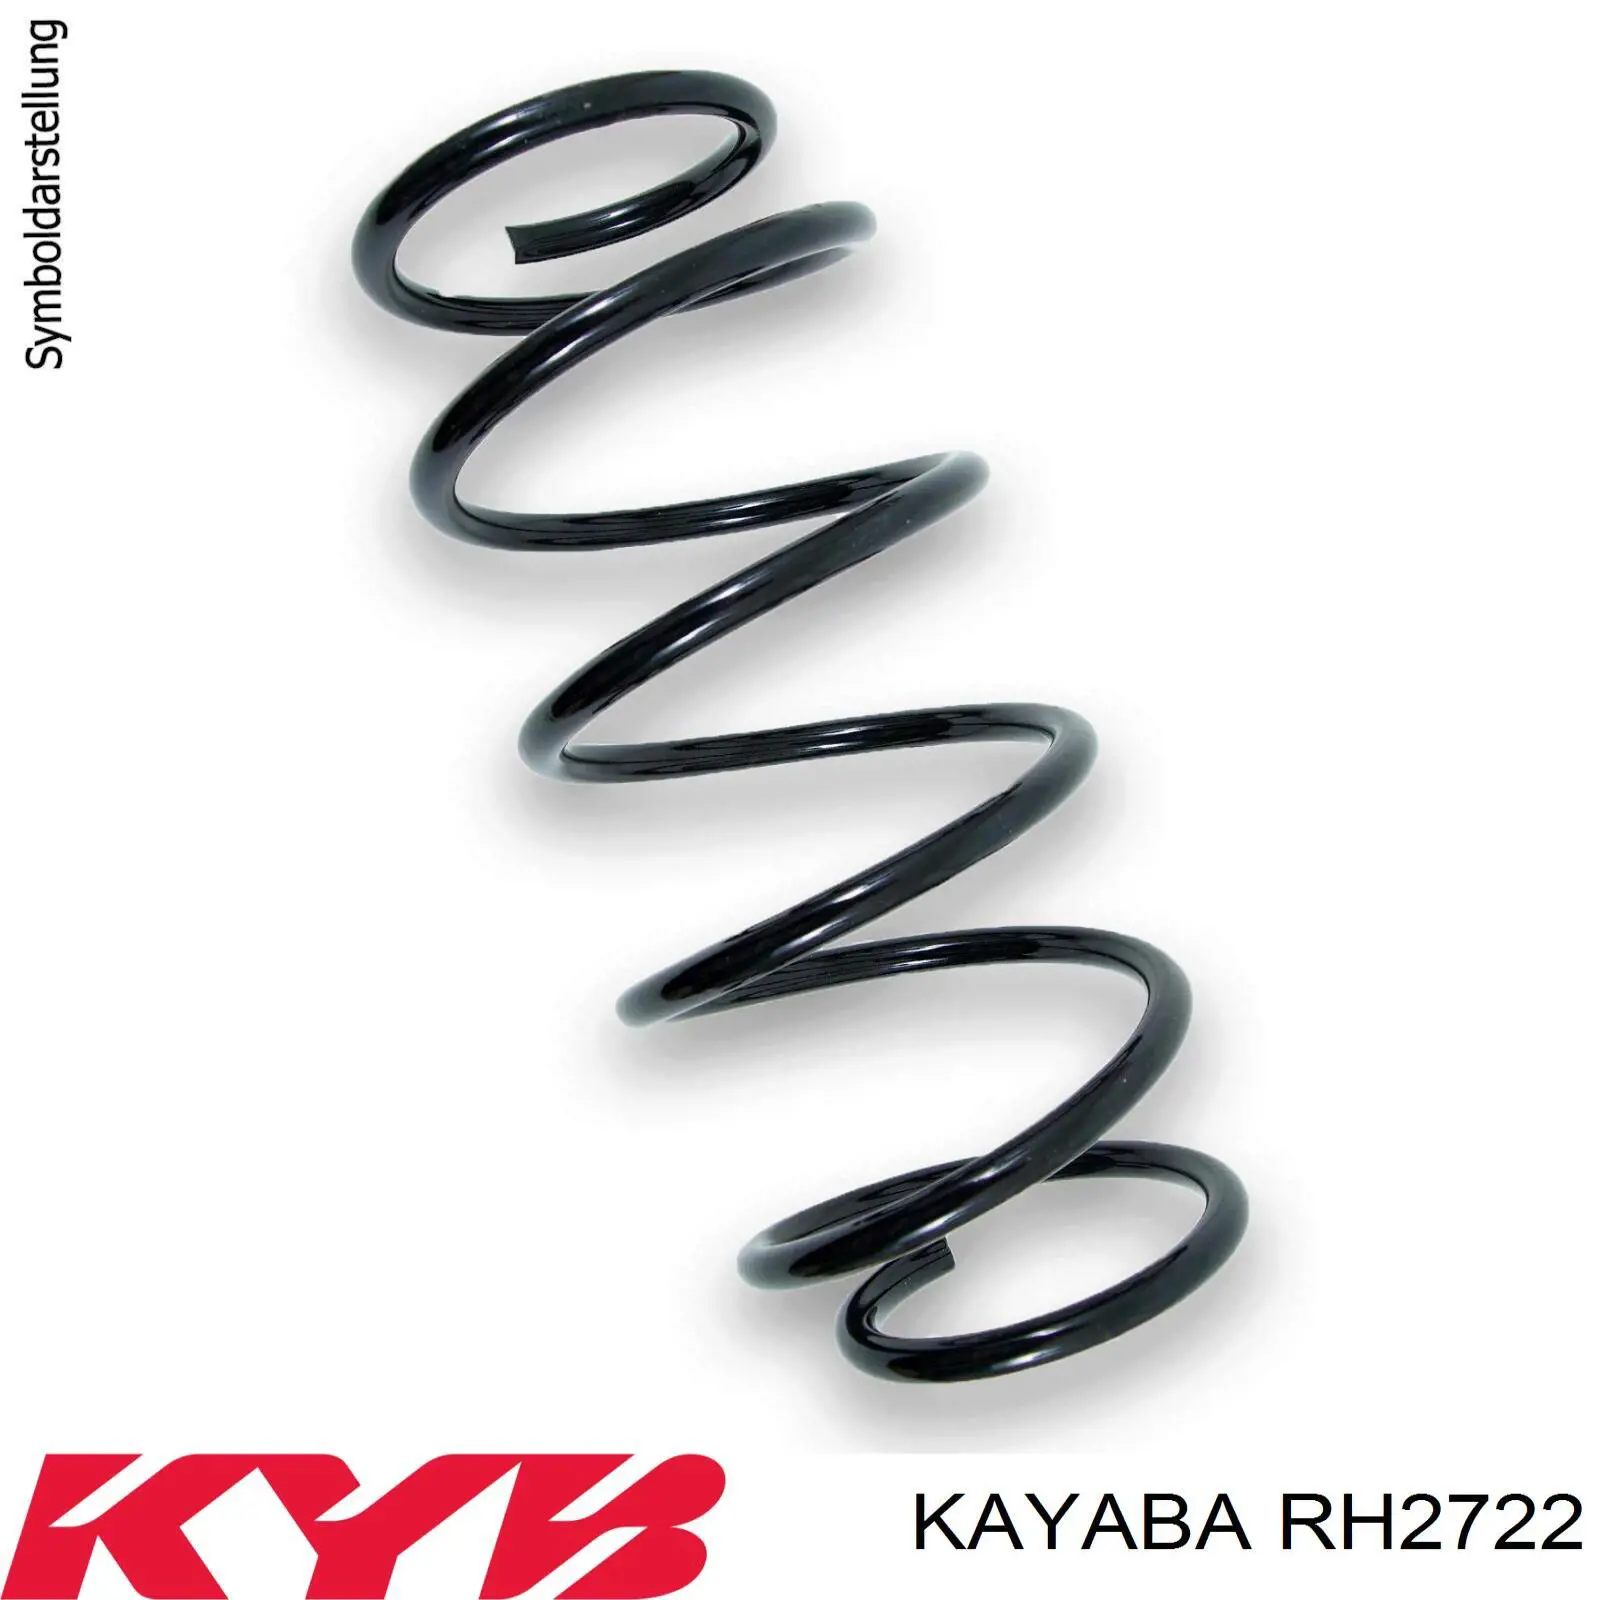 RH2722 Kayaba muelle de suspensión eje delantero